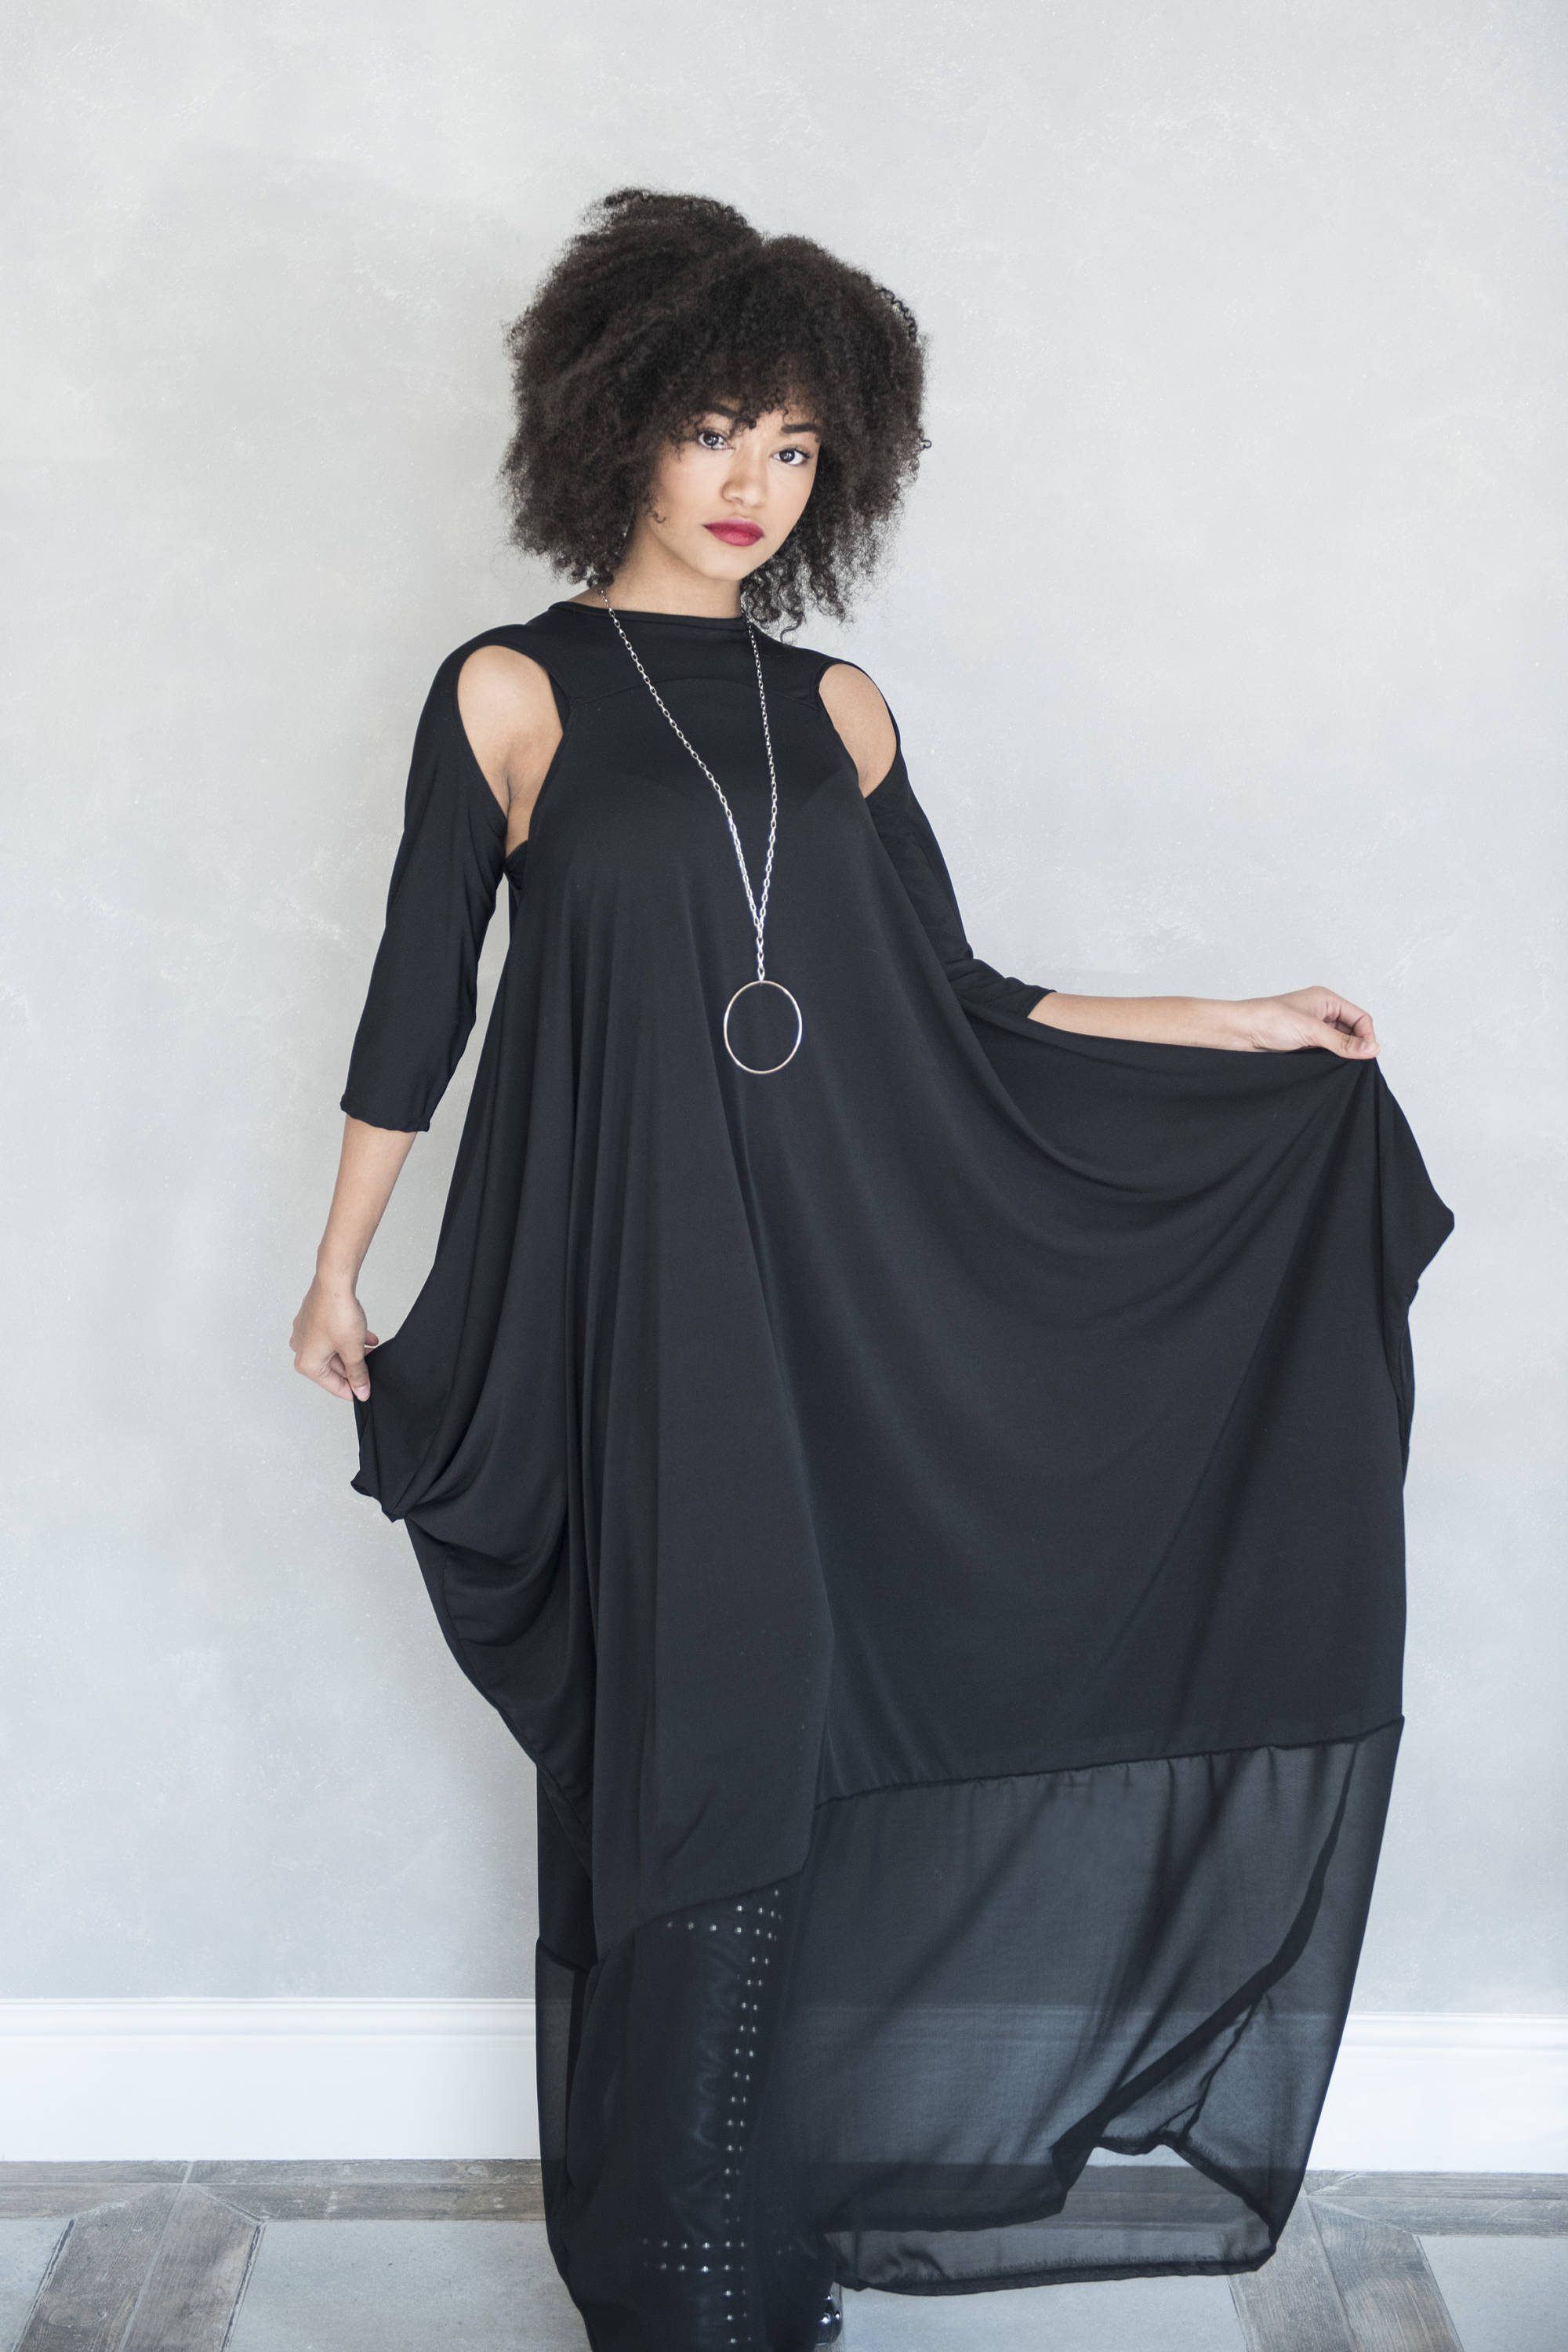 Gothic Maxi Dress plus size | Dresses Images 2022